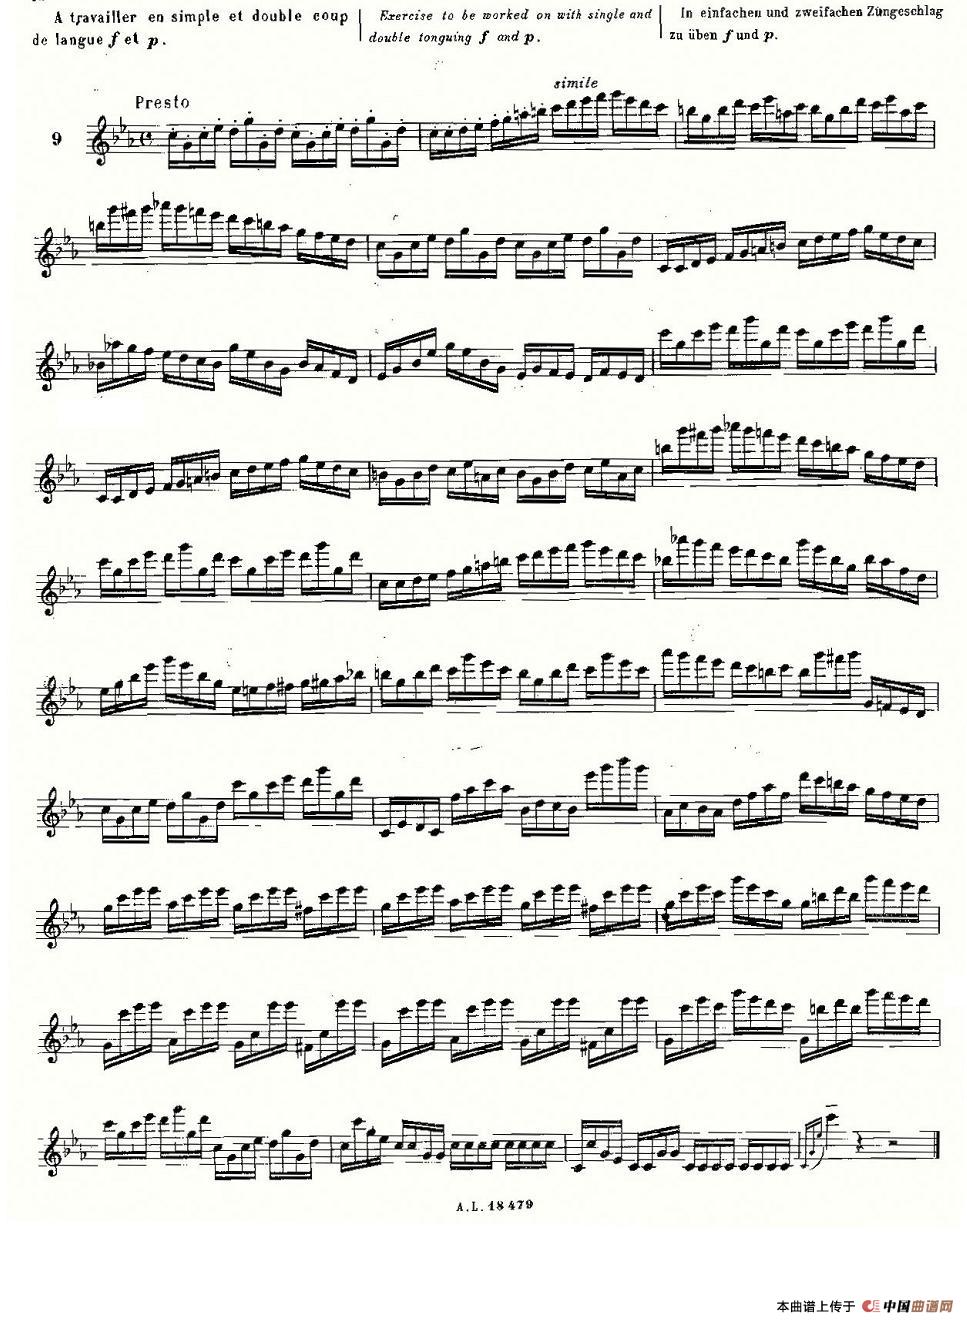 基于维尼亚夫斯基练习曲的10首长笛练习曲之9（